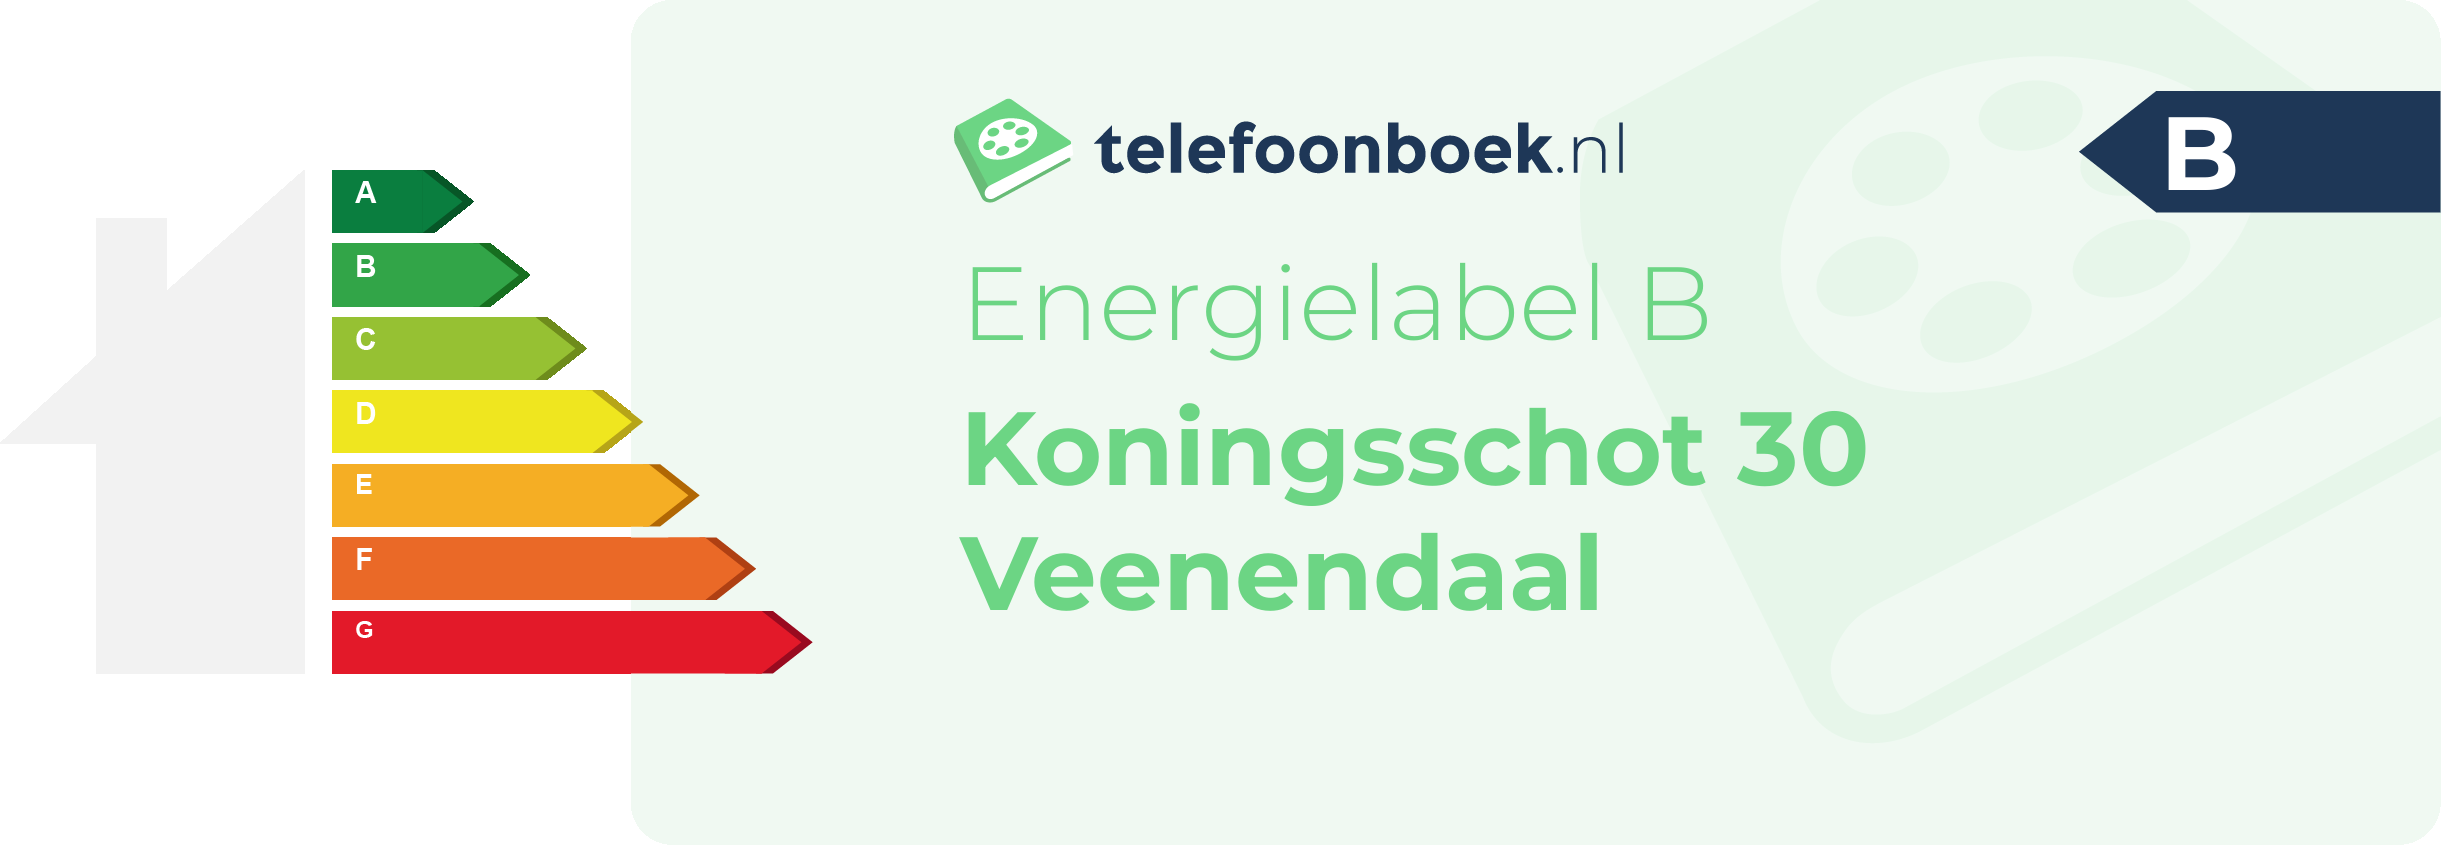 Energielabel Koningsschot 30 Veenendaal